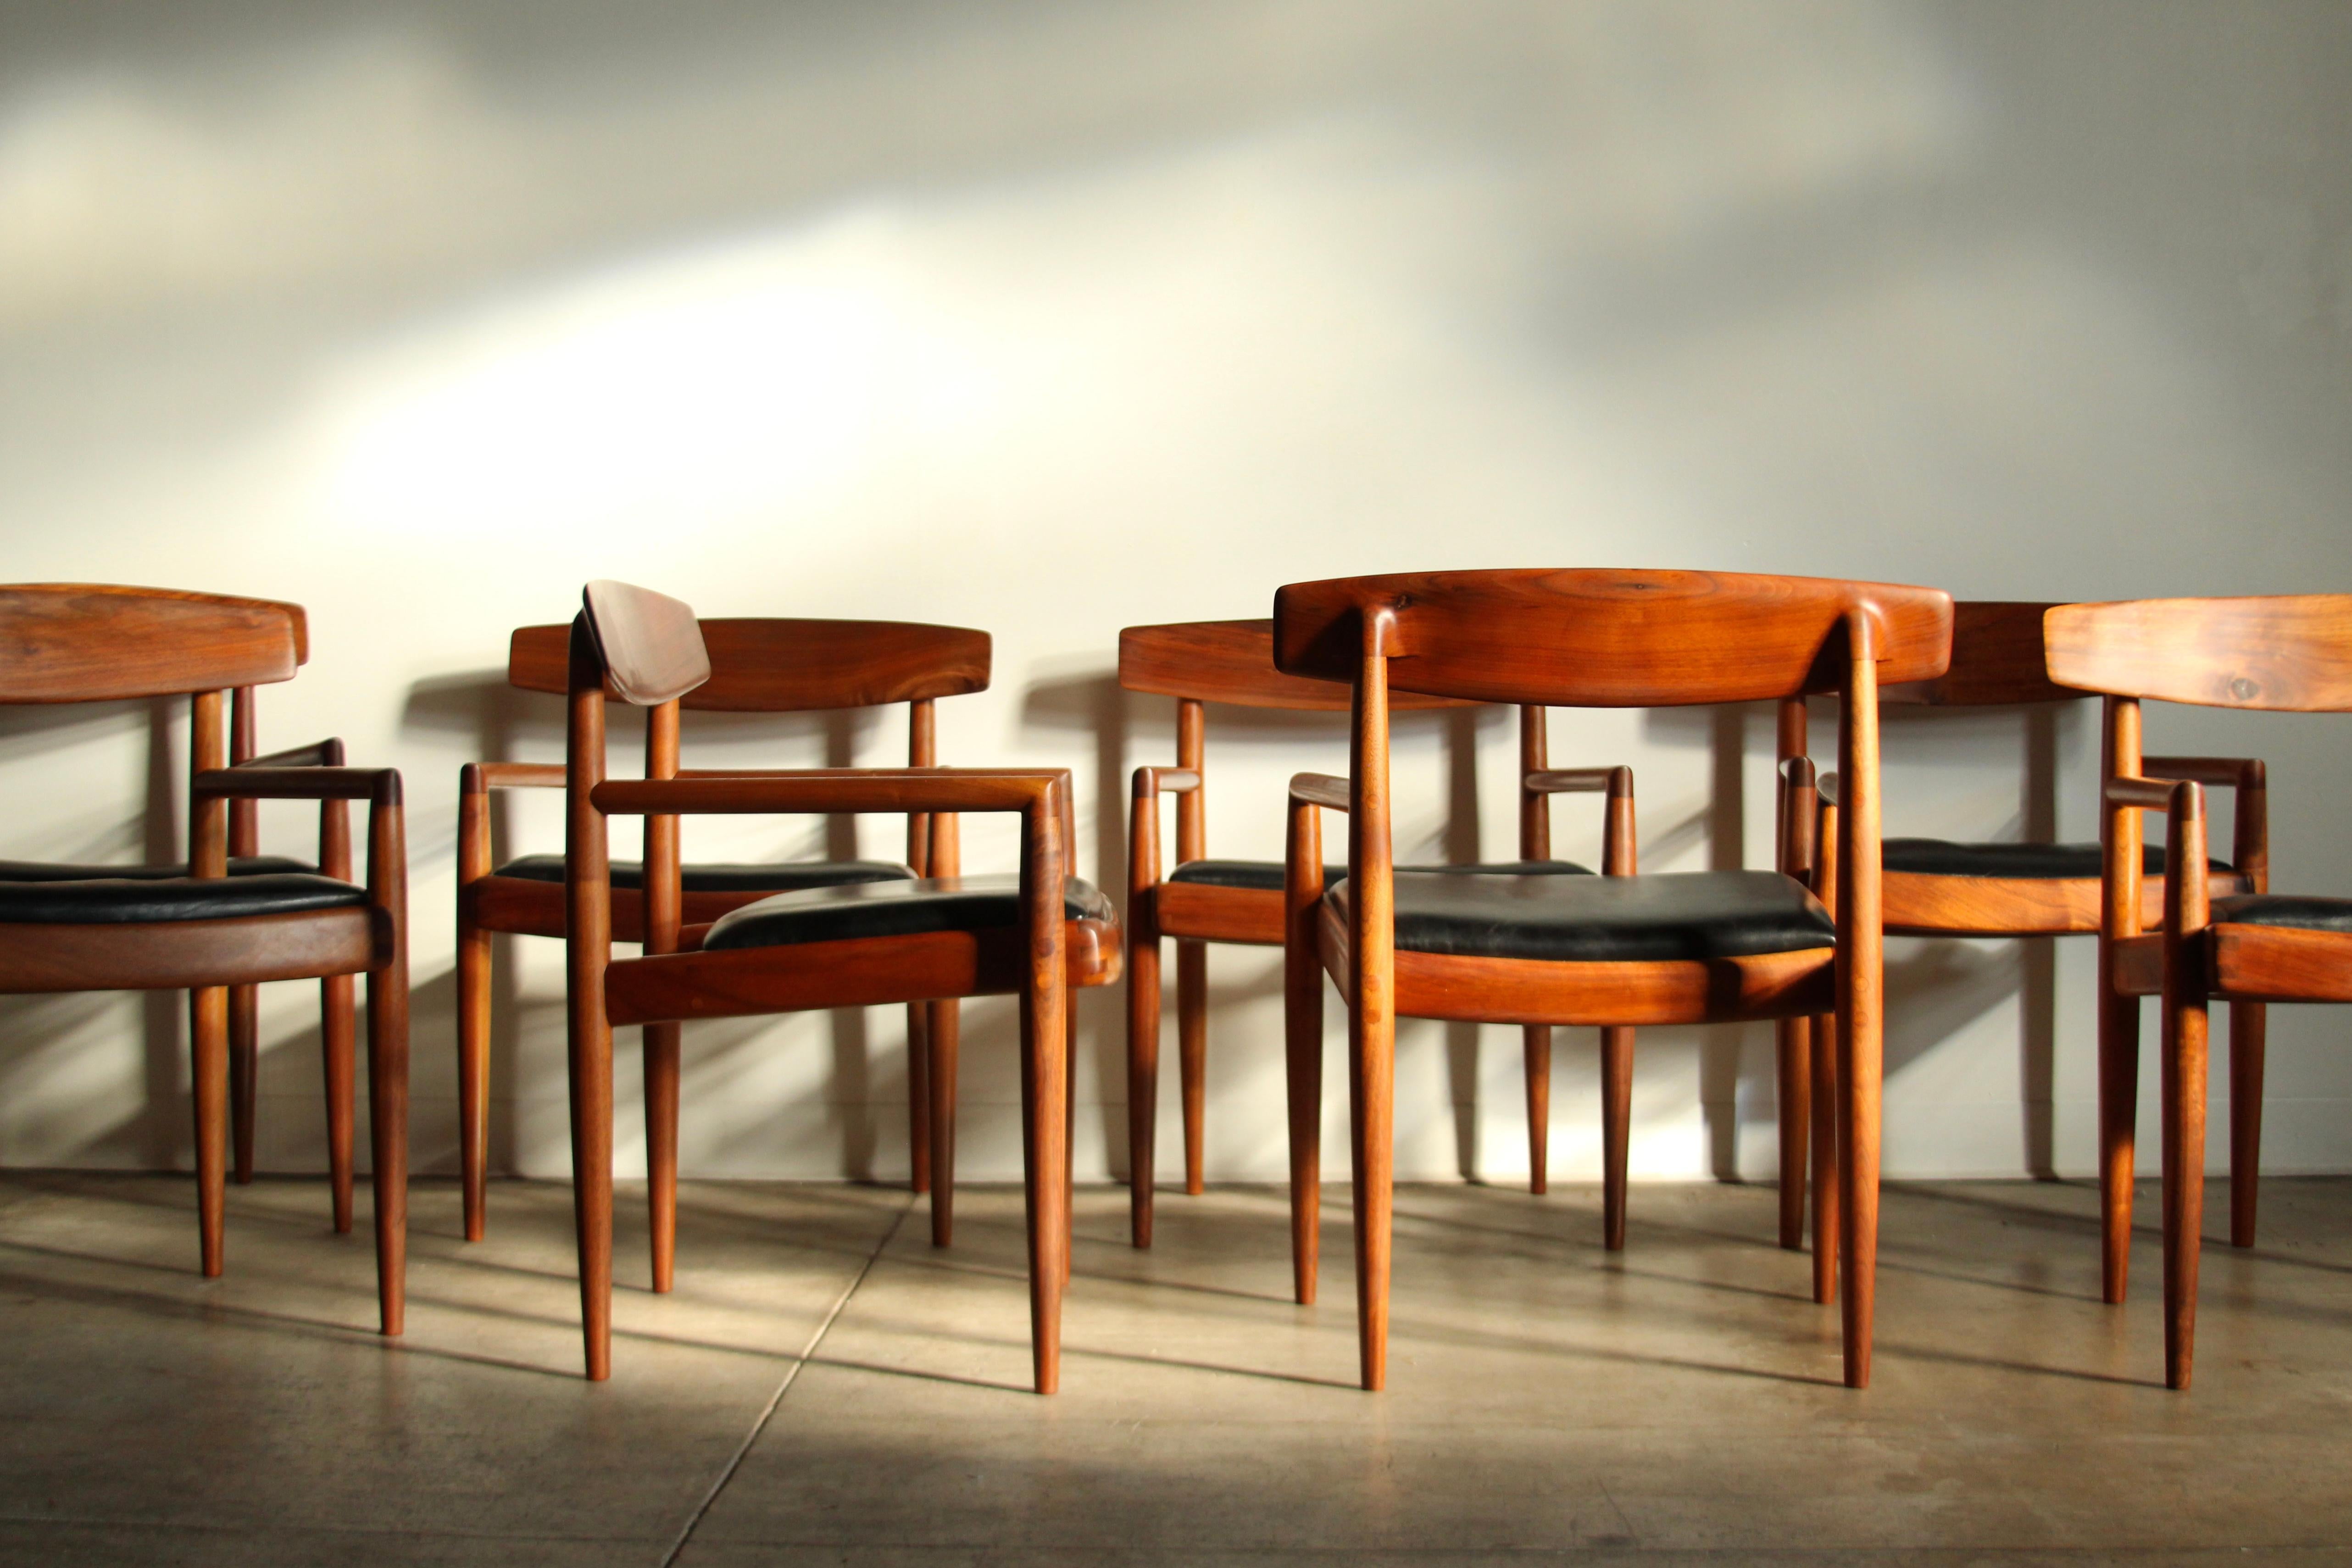 Un grand et exquis ensemble de huit chaises de salle à manger du maître californien Sam Maloof, exécutées en superbe noyer claro hautement figuré. Six des chaises ont été construites dans les années 1960 et deux chaises ont été ajoutées à l'ensemble